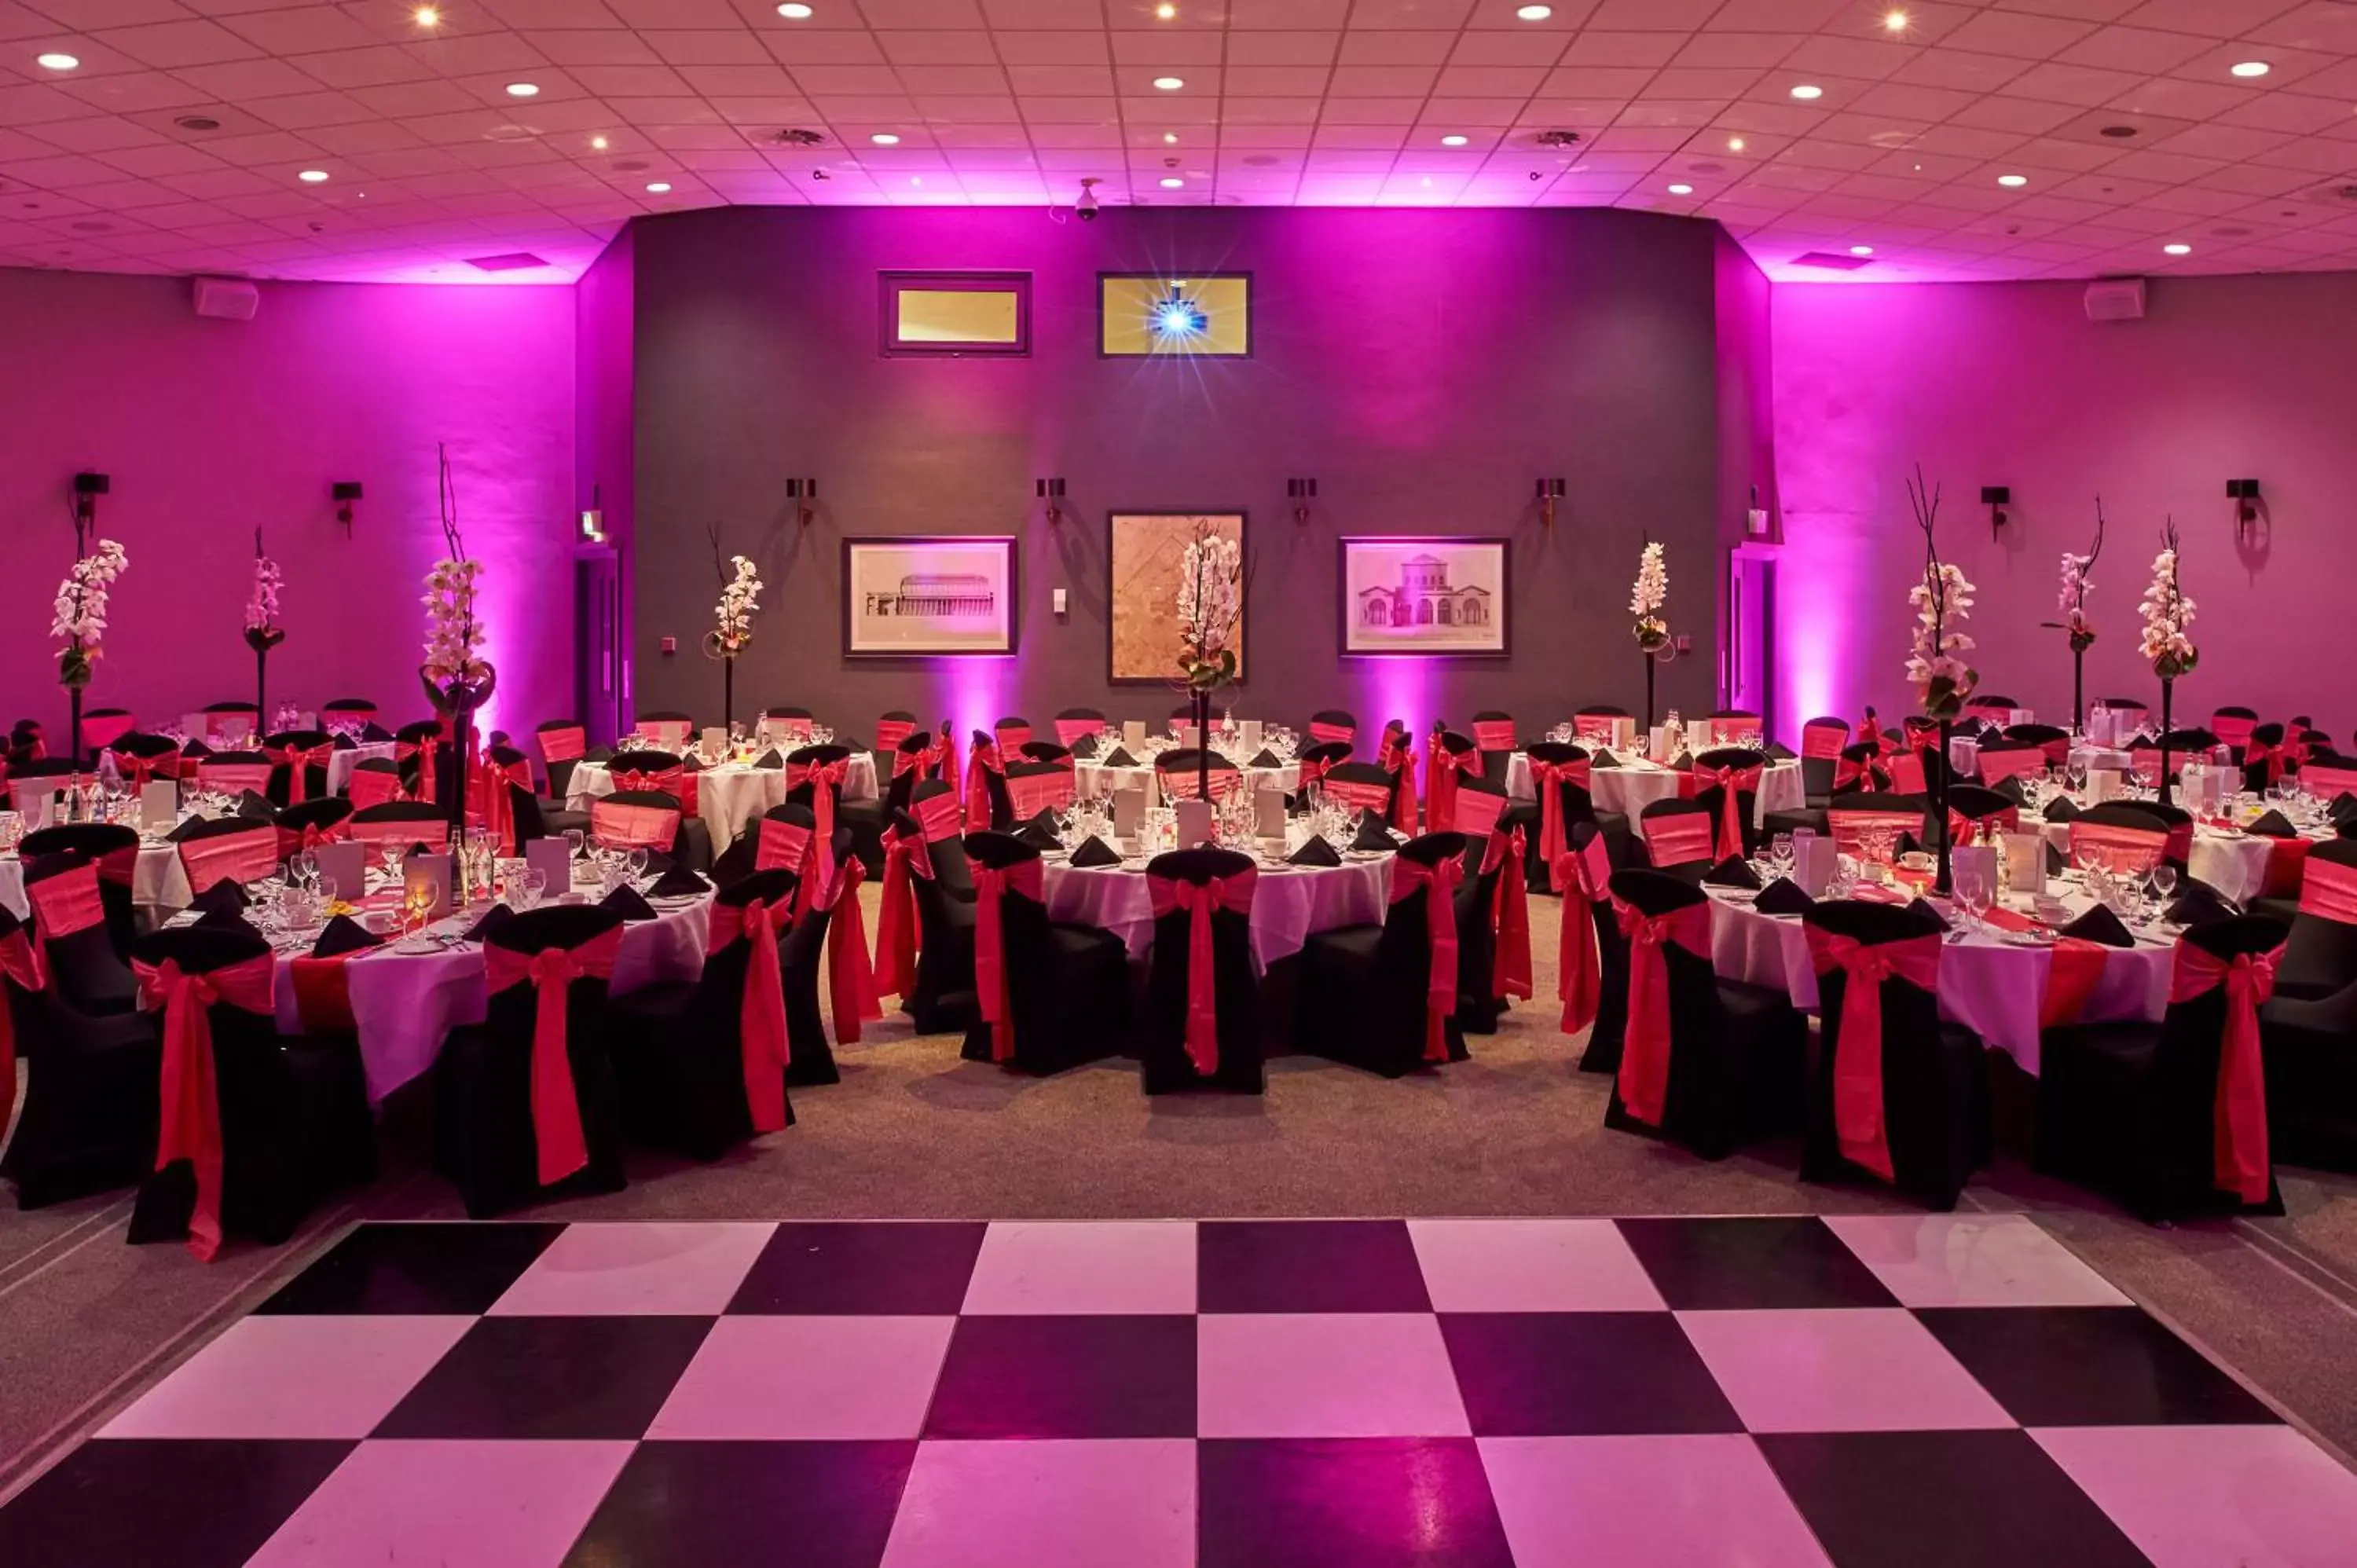 Banquet/Function facilities, Banquet Facilities in Principal York